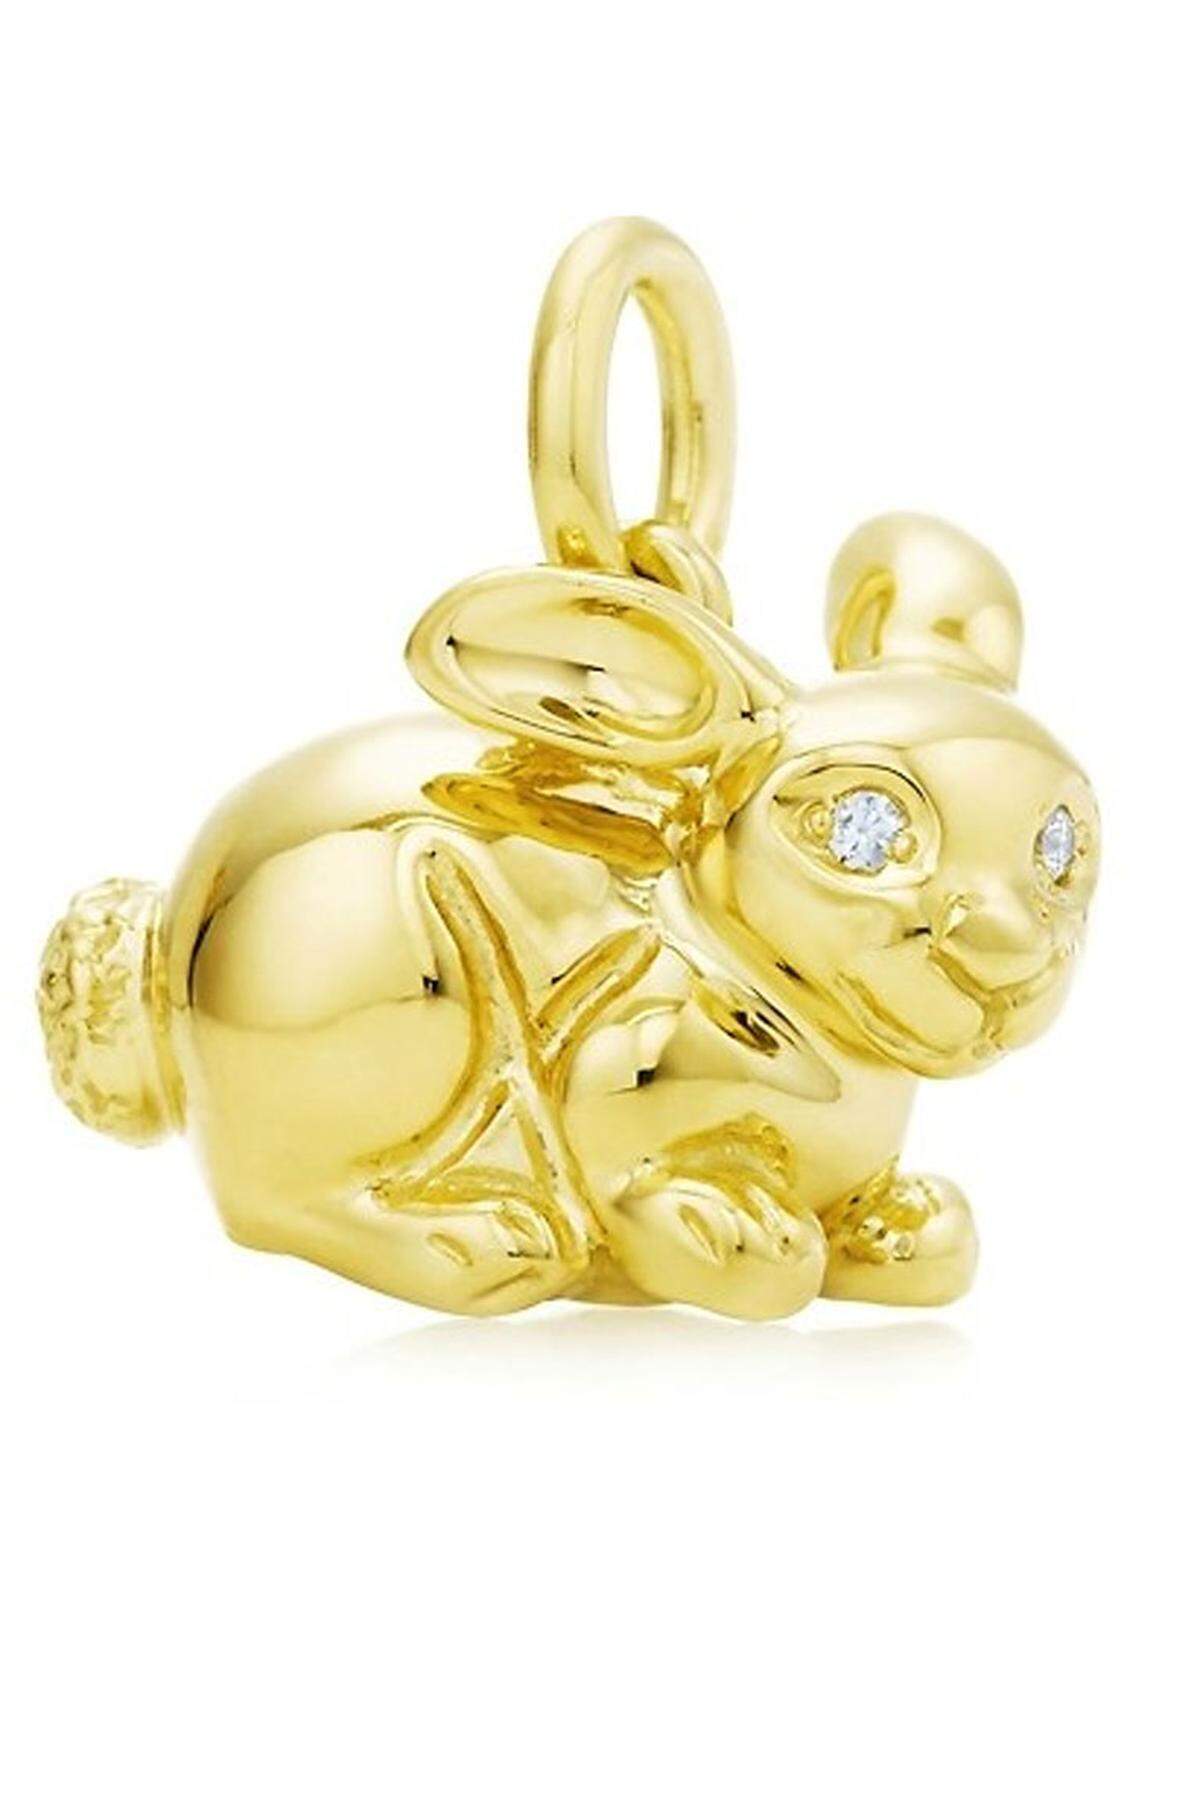 Mit Paloma Picasso kann man es zu Ostern richtig krachen lassen, wenigstens am Konto. Für Tiffany &amp; Co hat sie den Chinese Zodiac Rabbit mit 18 Karat Gold und zwei Brillianten in den Augenhöhlen entworfen. Um 1089 Euro bekommt man den kleinen Häschenanhänger.